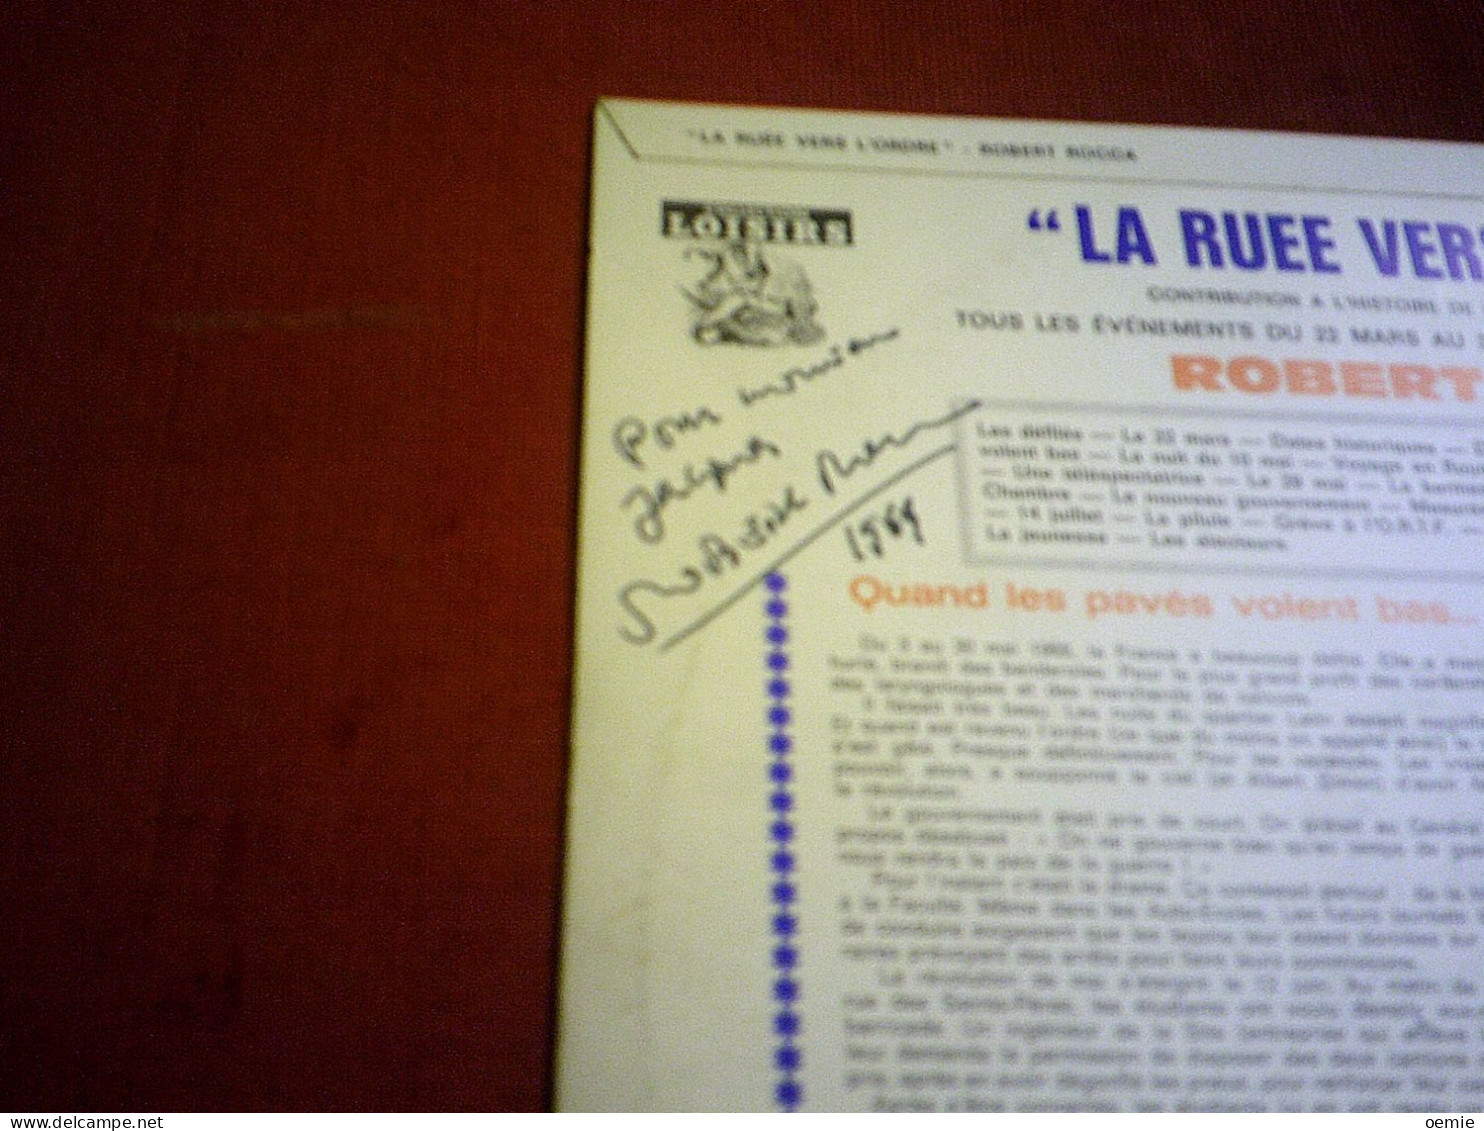 LA RUEE VERTS L'ORDRE   TOUS LES EVENEMENTS DU 22 MARS AU 30 JUIN 1968 PAR ROBERT ROCCA  AVEC AUTOGRAPHE AU DOS DE LA PO - Humour, Cabaret